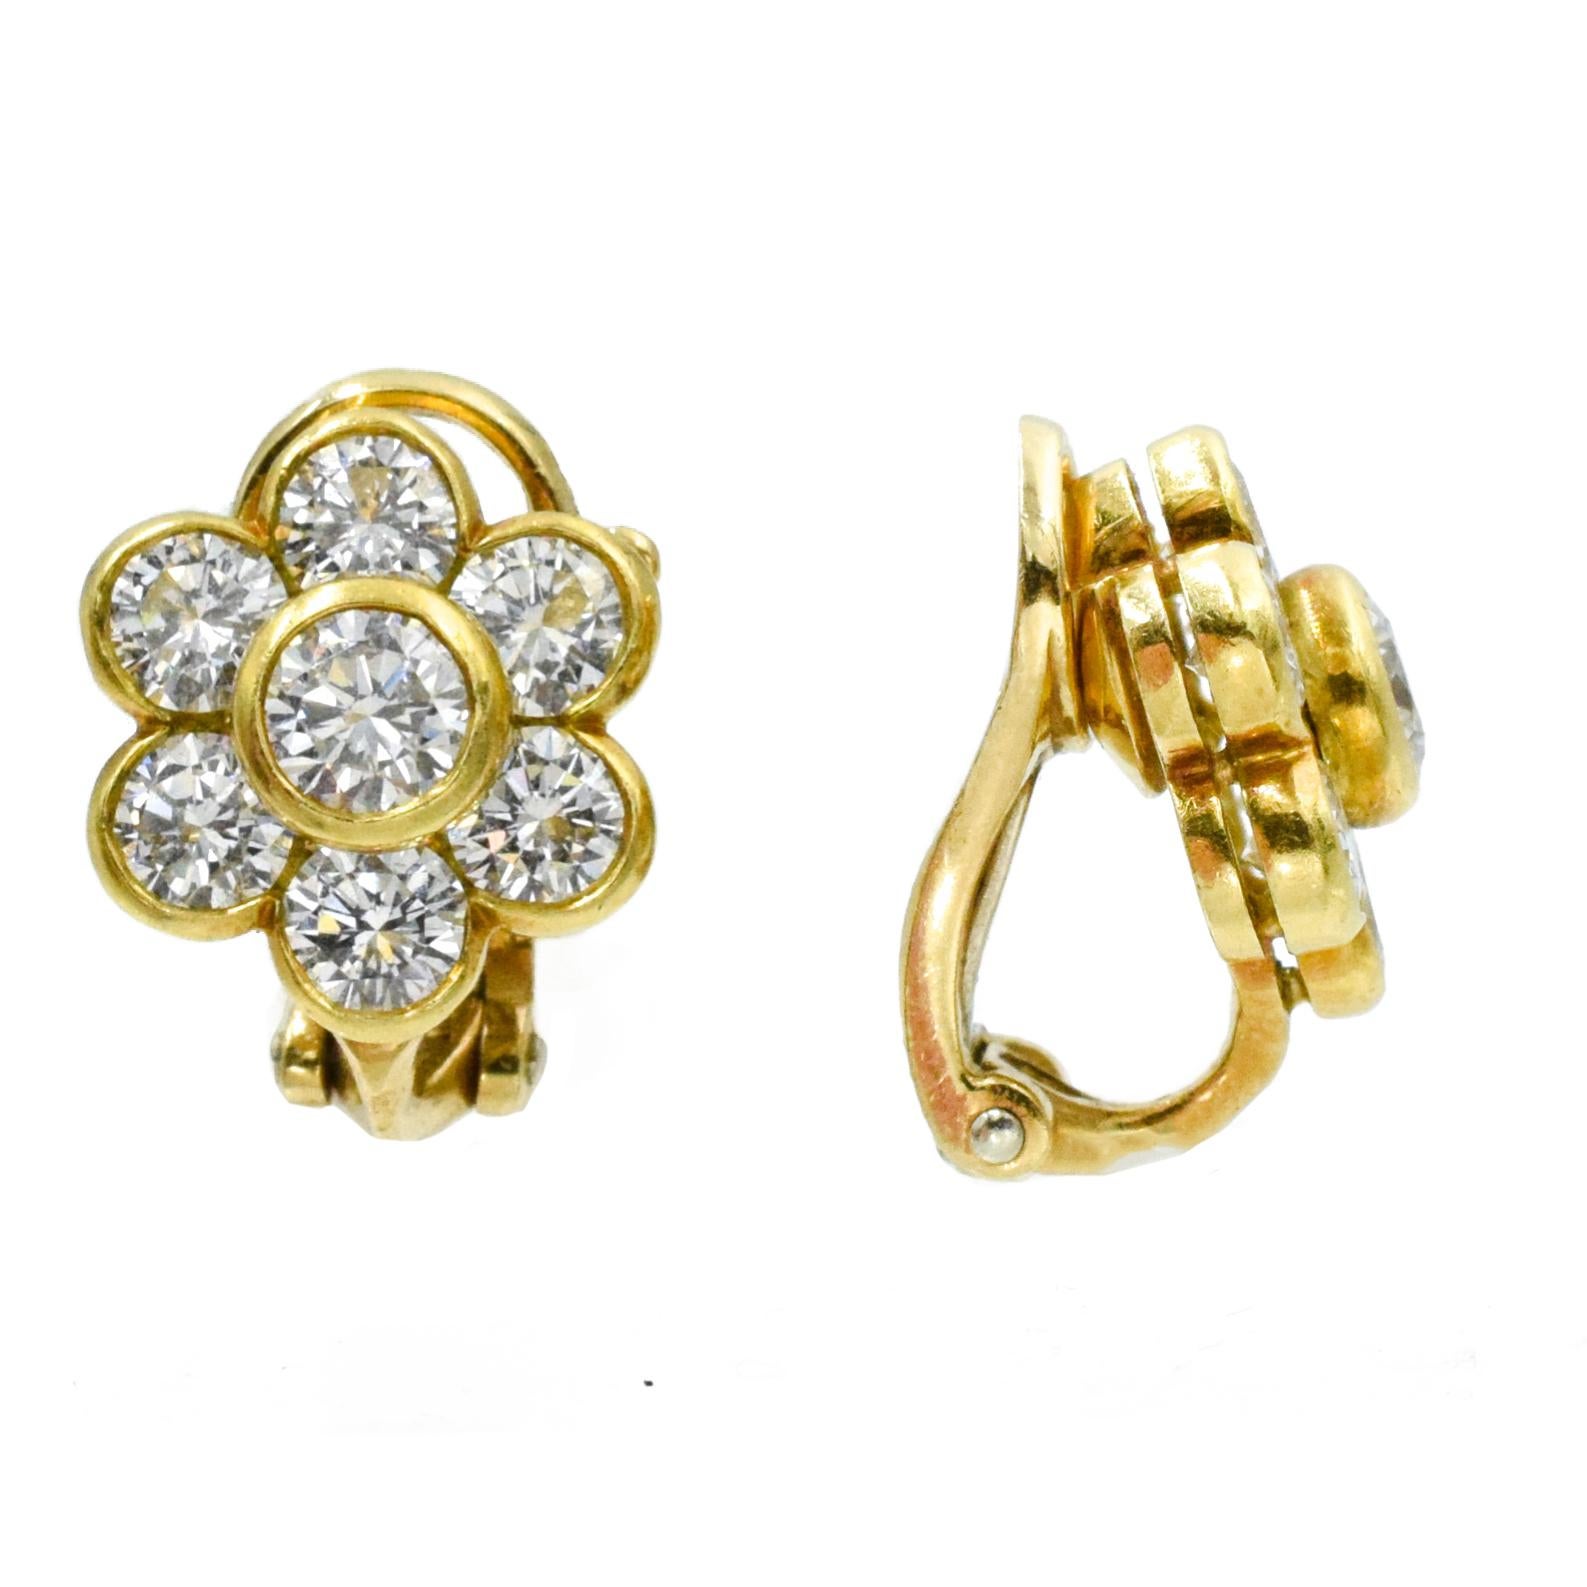 Round Cut Van Cleef & Arpels Diamond Cluster Earrings